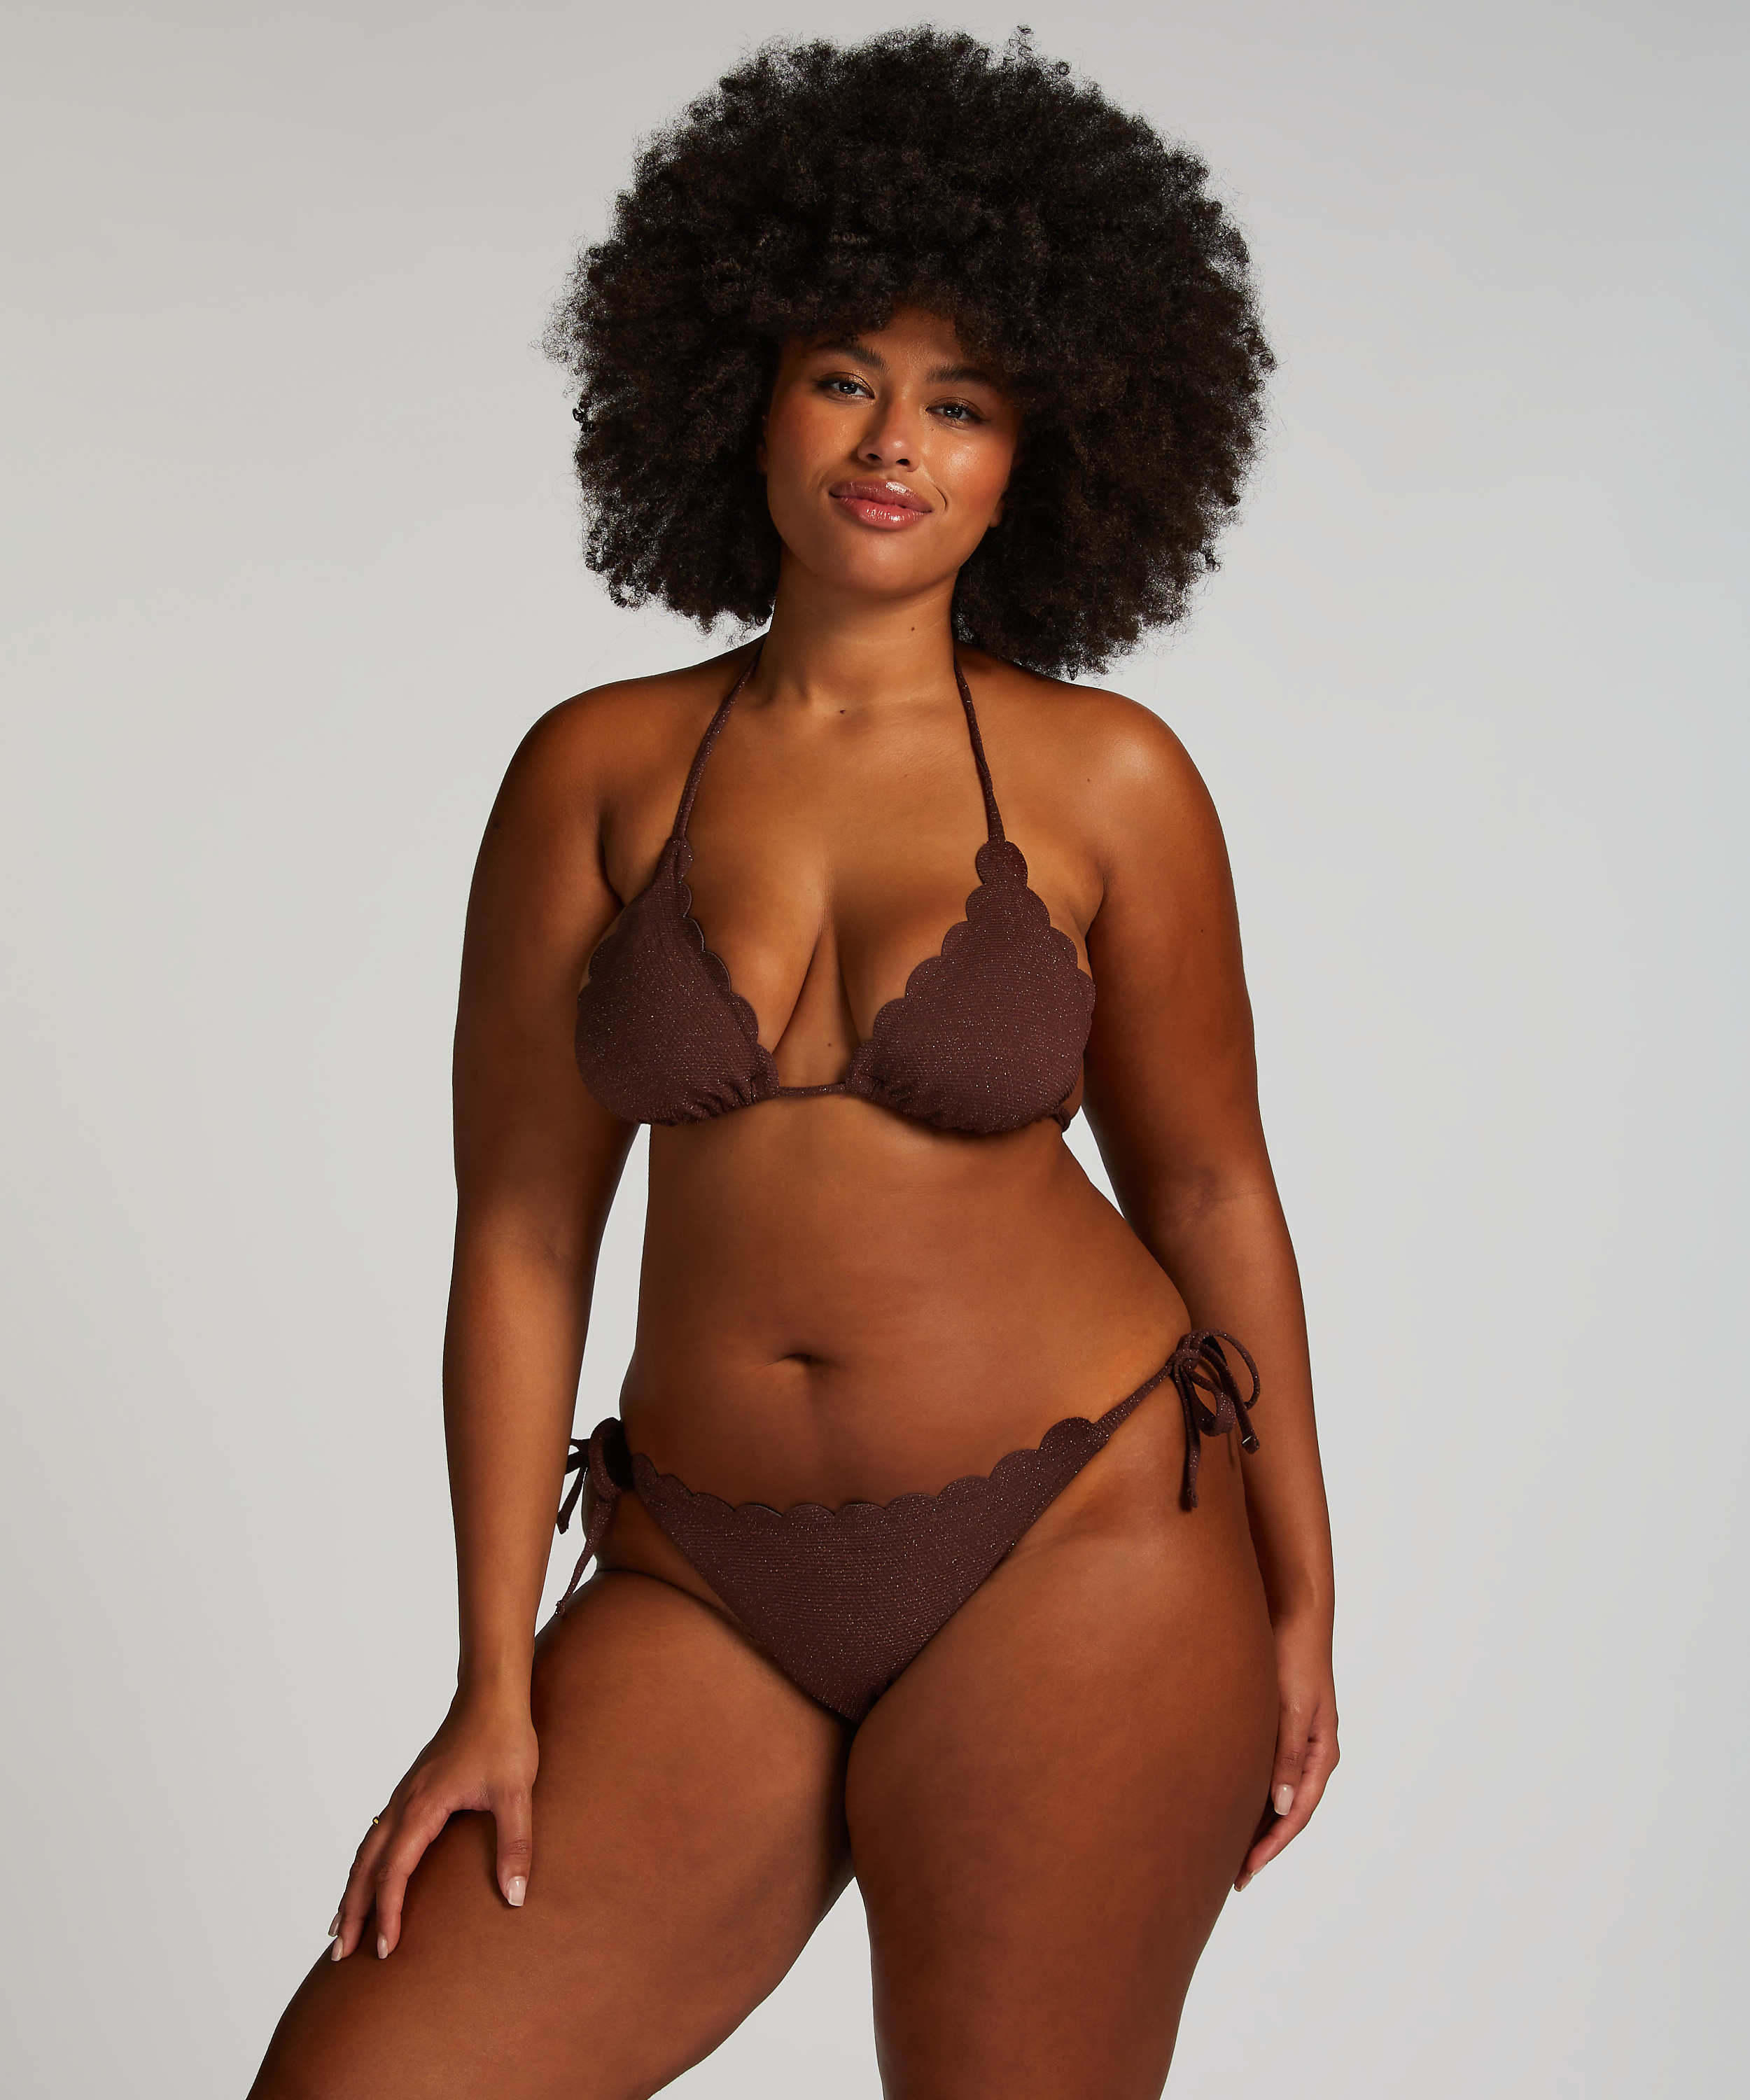 Scallop Lurex Bikini Top, Brown, main